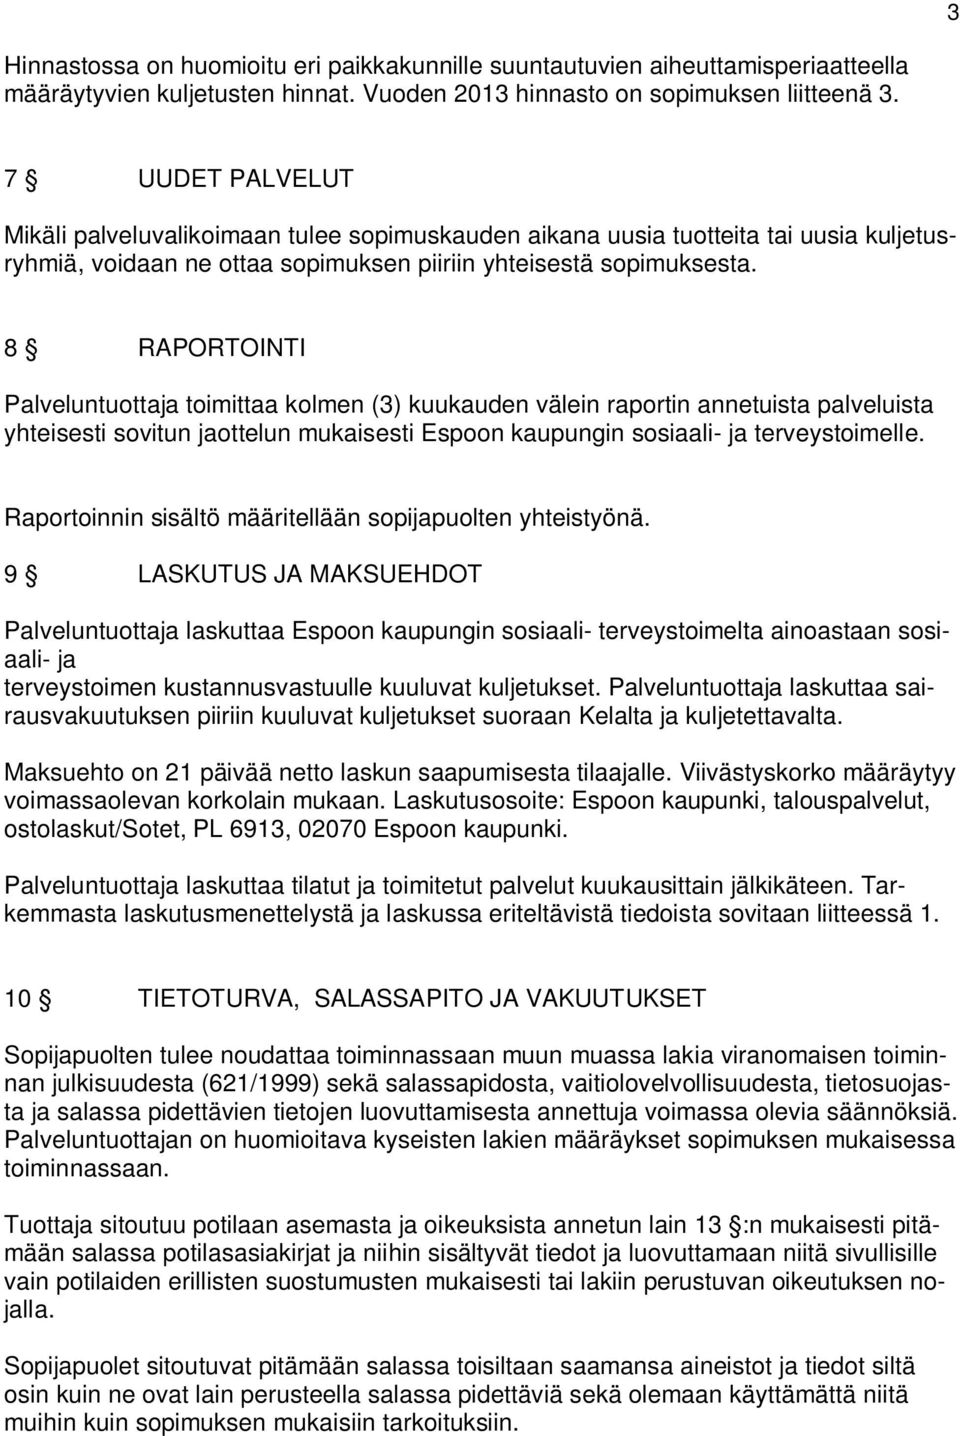 8 RAPORTOINTI Palveluntuottaja toimittaa kolmen (3) kuukauden välein raportin annetuista palveluista yhteisesti sovitun jaottelun mukaisesti Espoon kaupungin sosiaali- ja terveystoimelle.